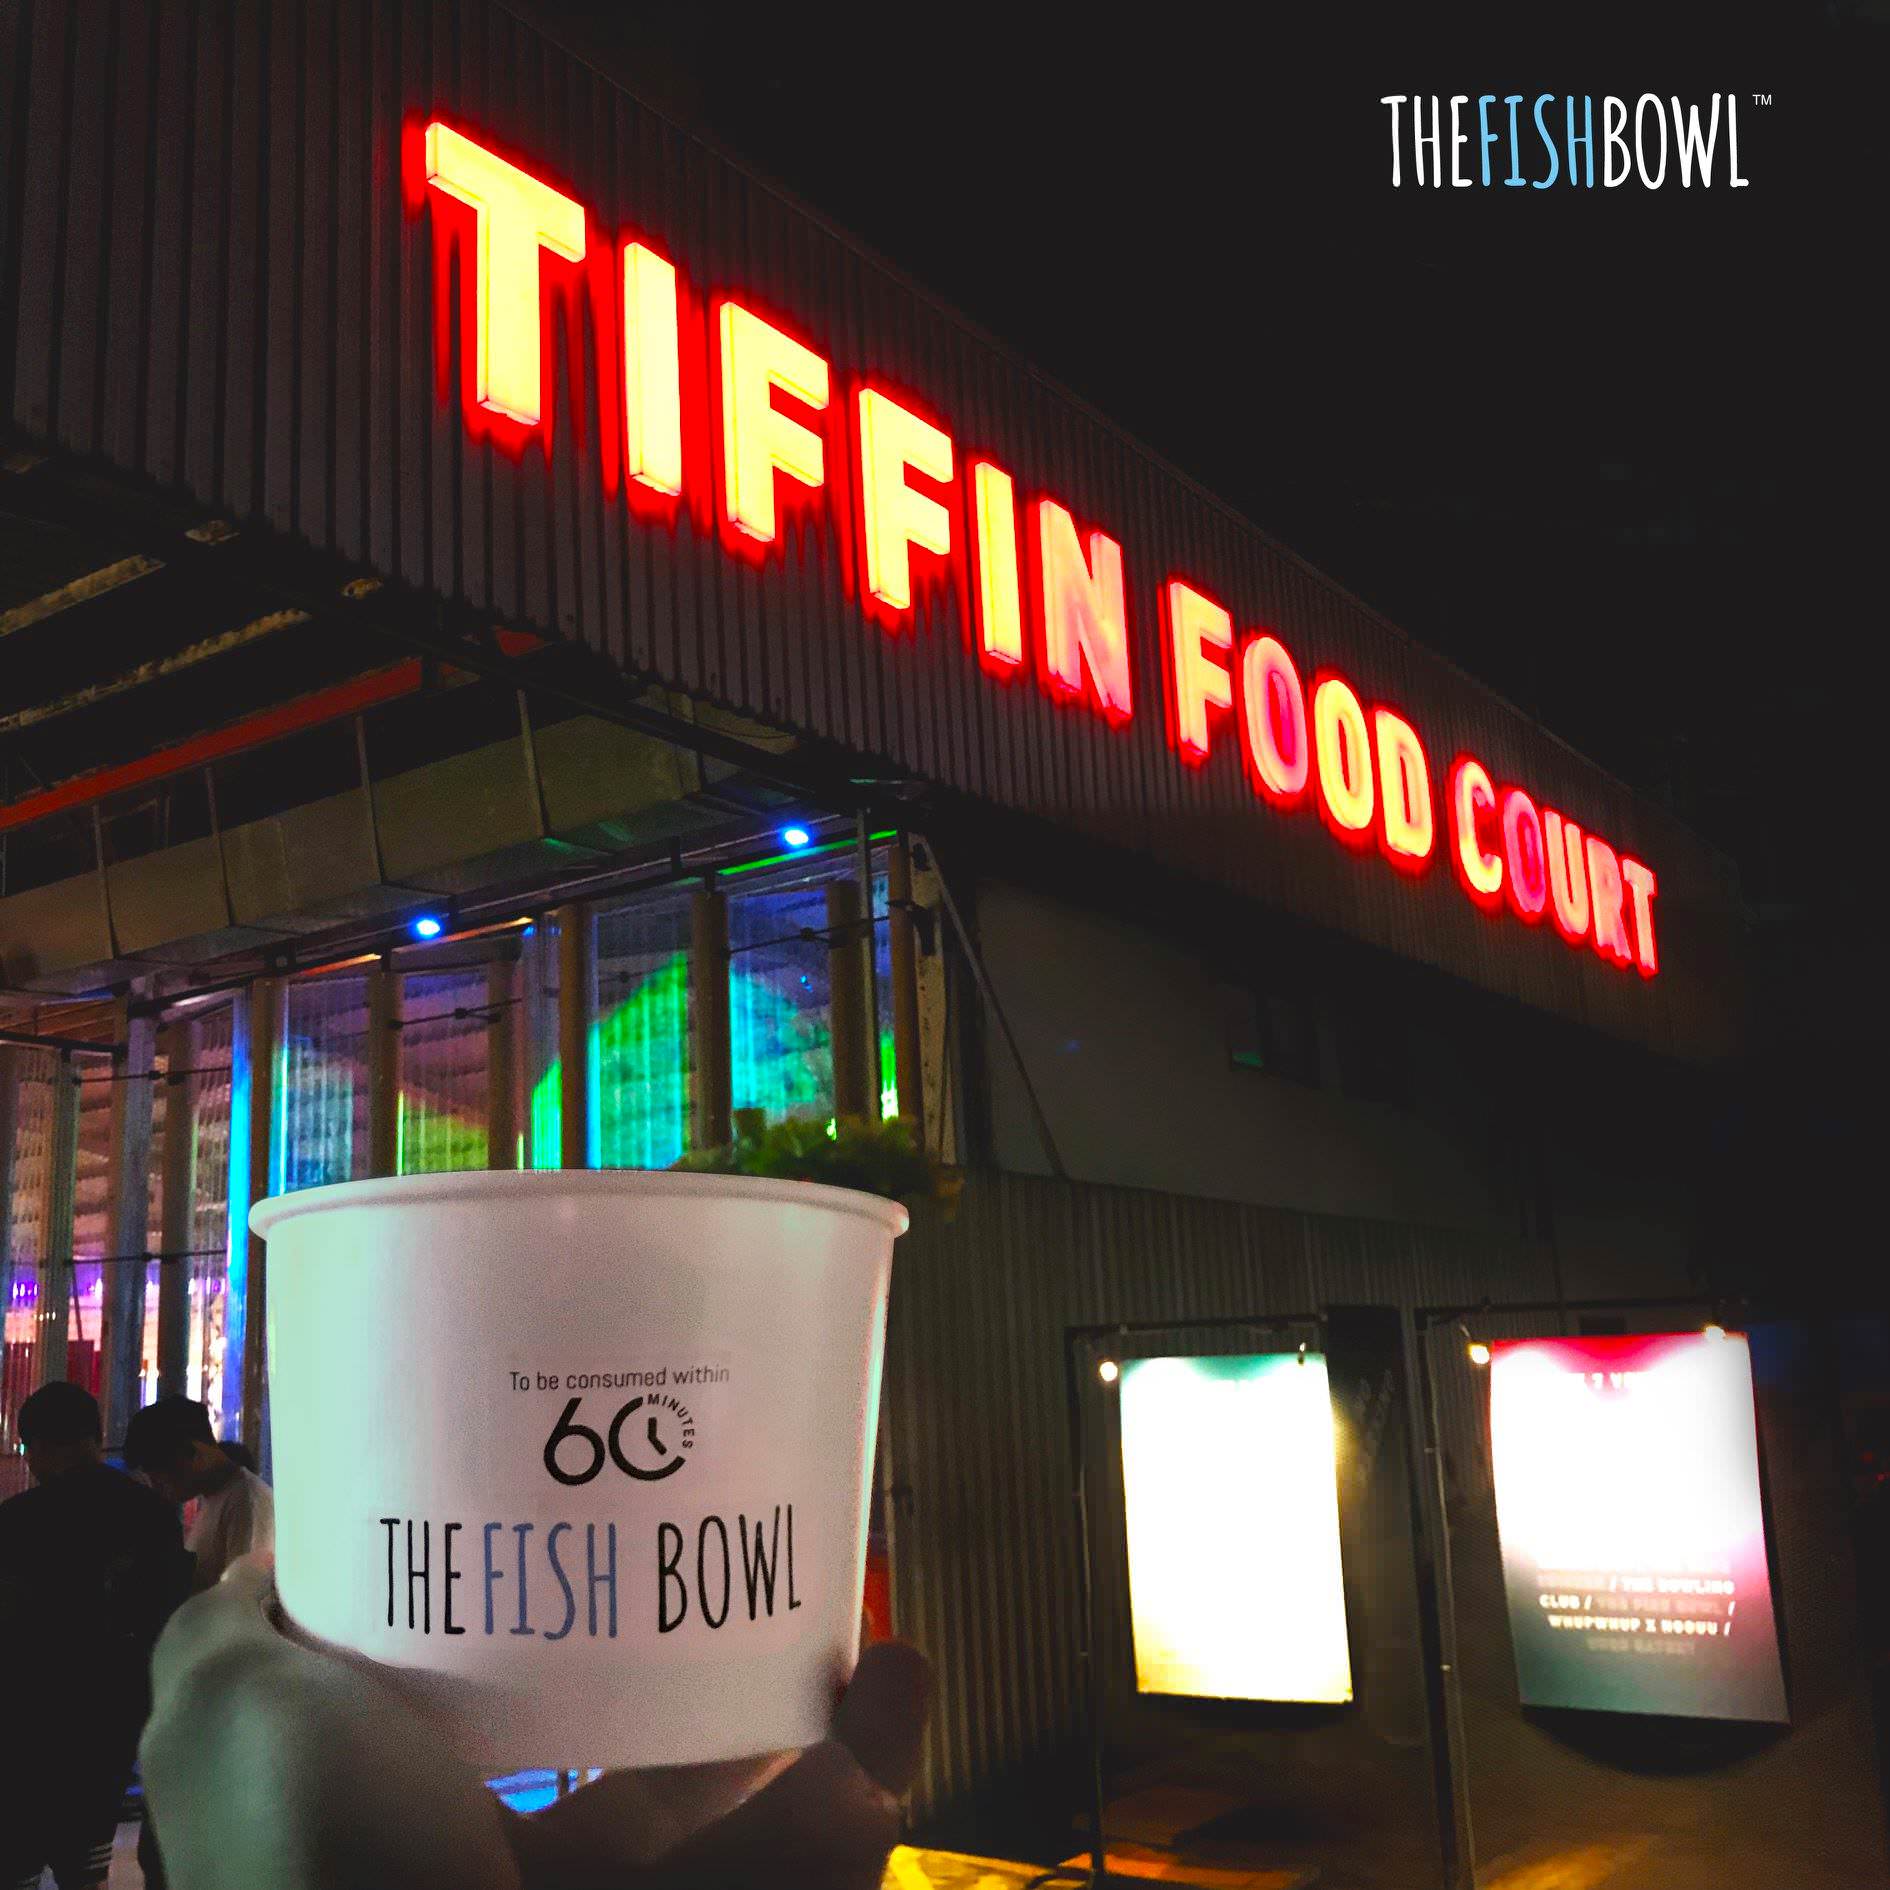 Tiffin Food Court 1